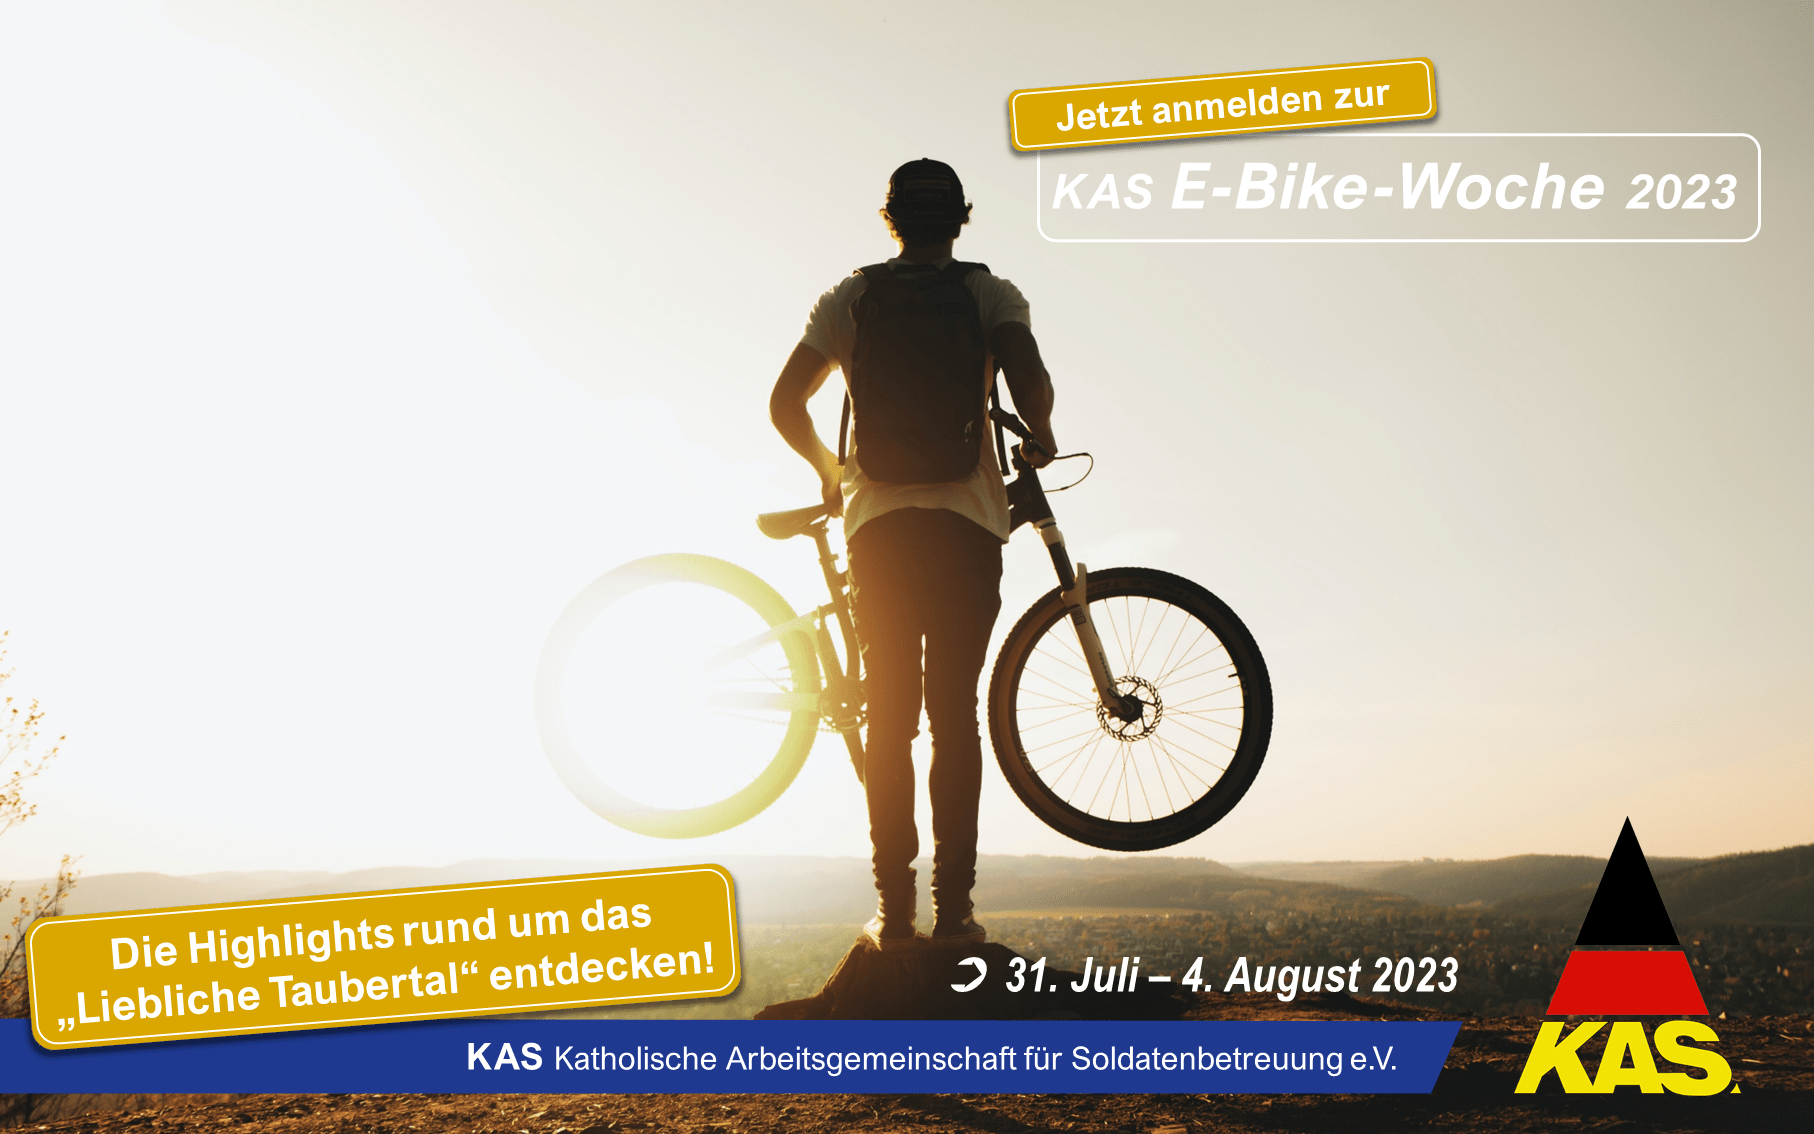 KAS E-Bike-Woche 2023: Herzliche Einladung